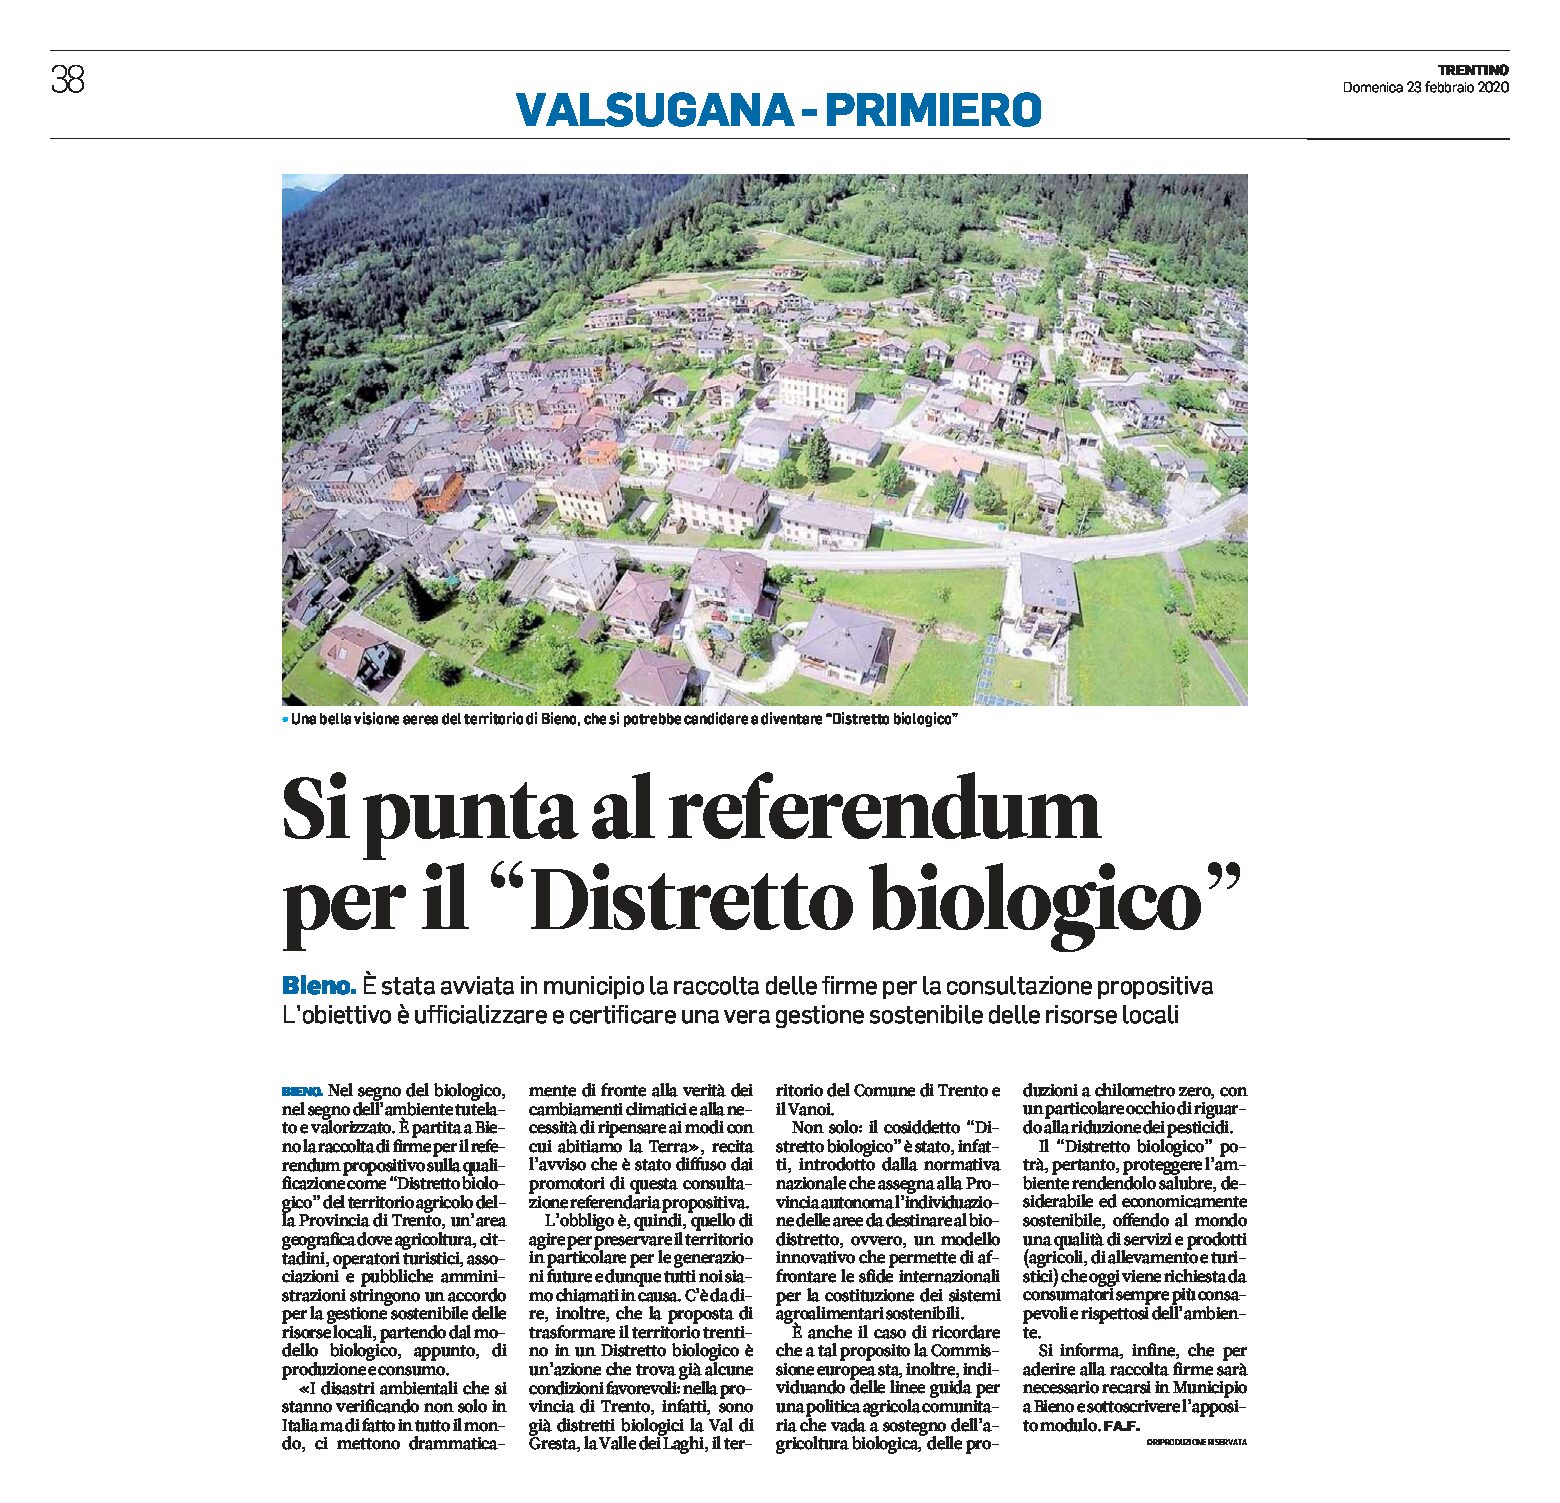 Bleno, Trentino: si punta al referendum per il “Distretto biologico”